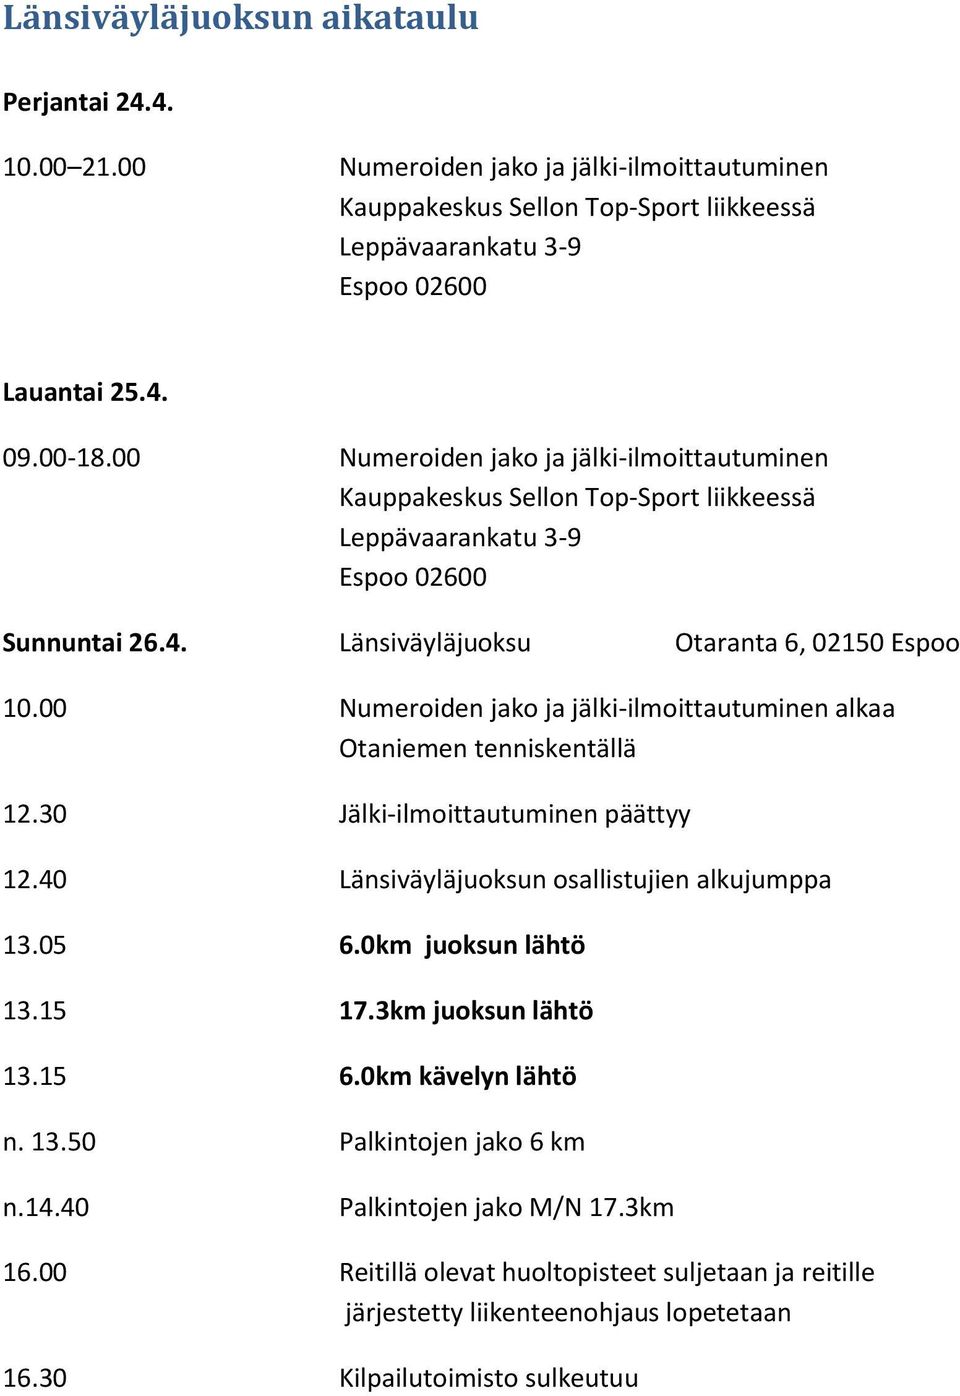 00 Numeroiden jako ja jälki-ilmoittautuminen alkaa Otaniemen tenniskentällä 12.30 Jälki-ilmoittautuminen päättyy 12.40 Länsiväyläjuoksun osallistujien alkujumppa 13.05 6.0km juoksun lähtö 13.15 17.